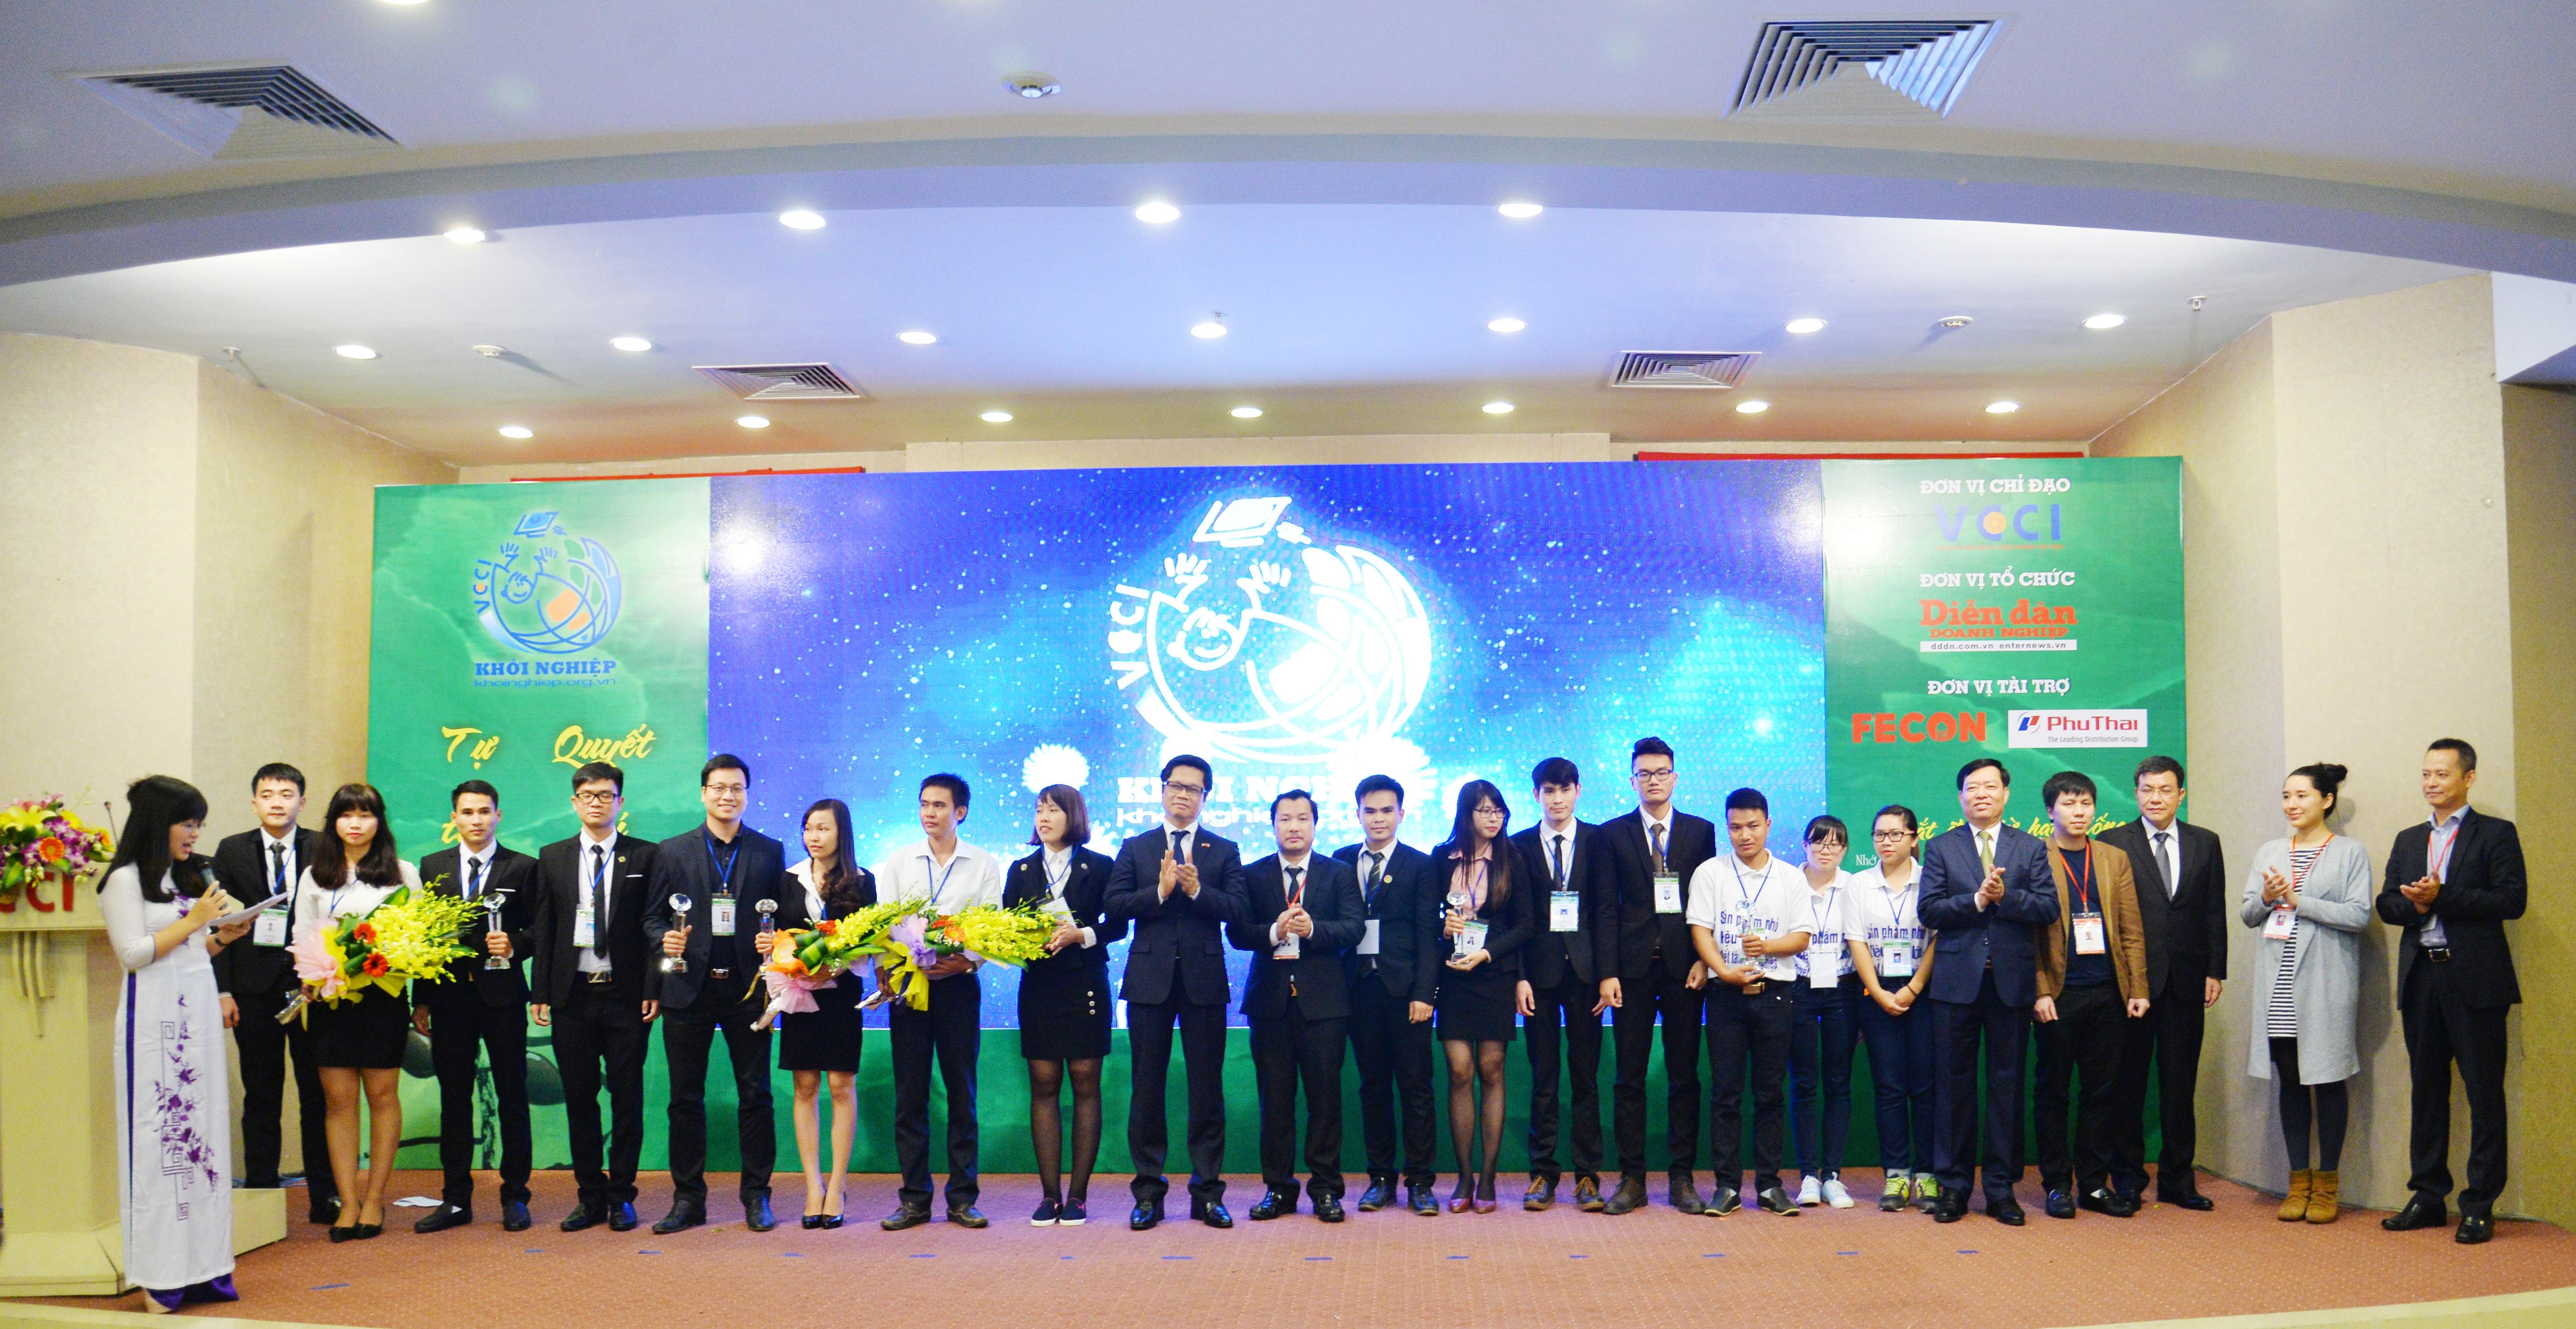 TS Vũ Tiến Lộc – Chủ tịch VCCI và ông Phạm Minh Huân – Thứ trưởng Bộ LĐTBXH (thứ 5 từ phải sang), các thành viên Hội đồng thẩm định cùng các nhóm Dự án đạt giải Cuộc thi Khởi nghiệp 2015.